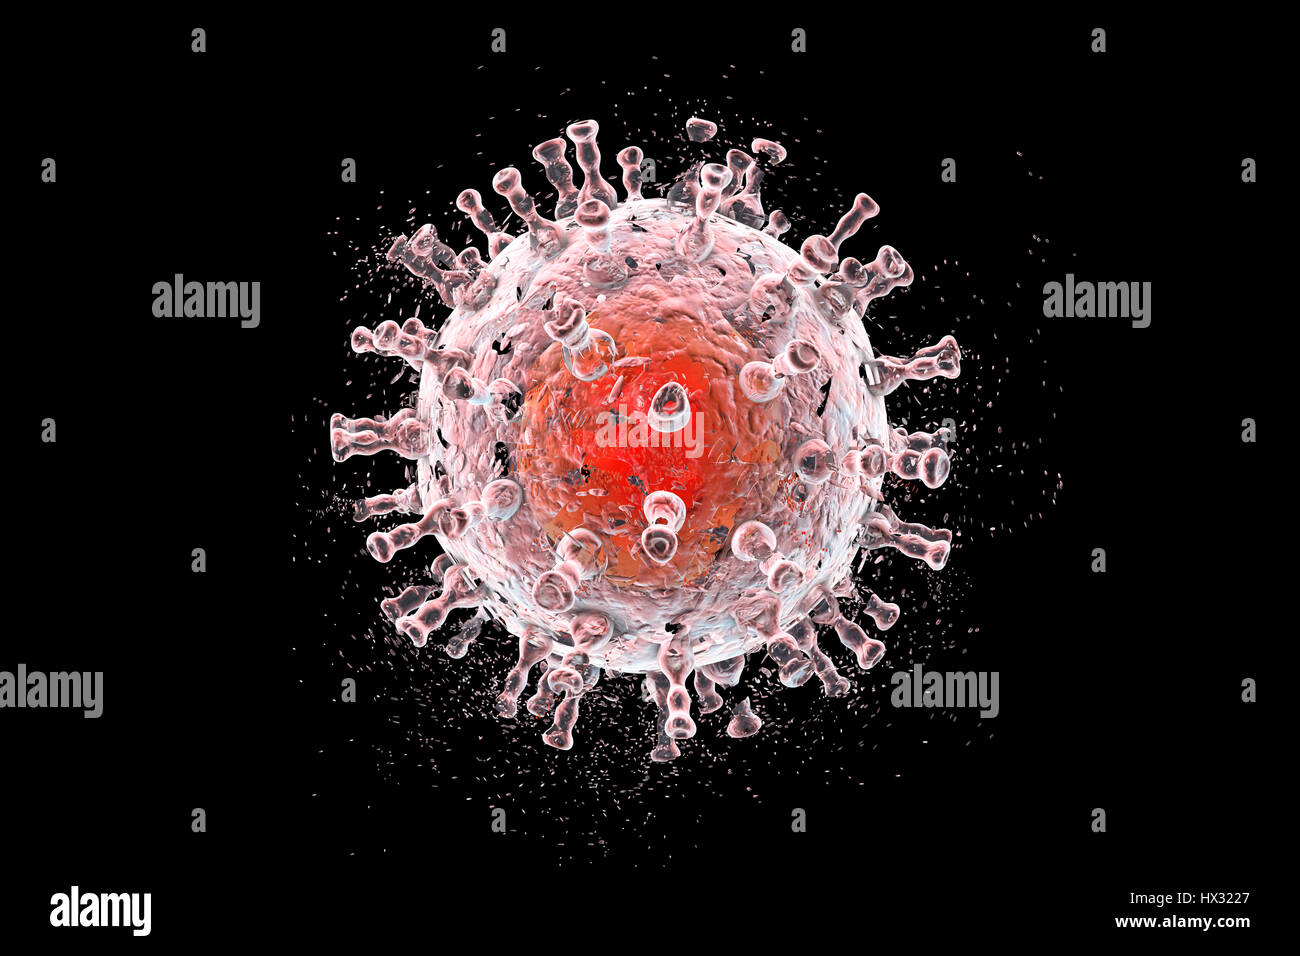 Zerstörung der japanische-Enzephalitis-Virus (JEV), Computer-Abbildung. Konzeptbild JEV-Infektion, Behandlung und Prävention. JEV ist eine RNA (Ribonukleinsäure)-Virus aus der Familie der Flaviviridae. Es wird von Culex SP. Mücke übertragen und verursacht Enzephalitis (Entzündung des Gehirns). Stockfoto